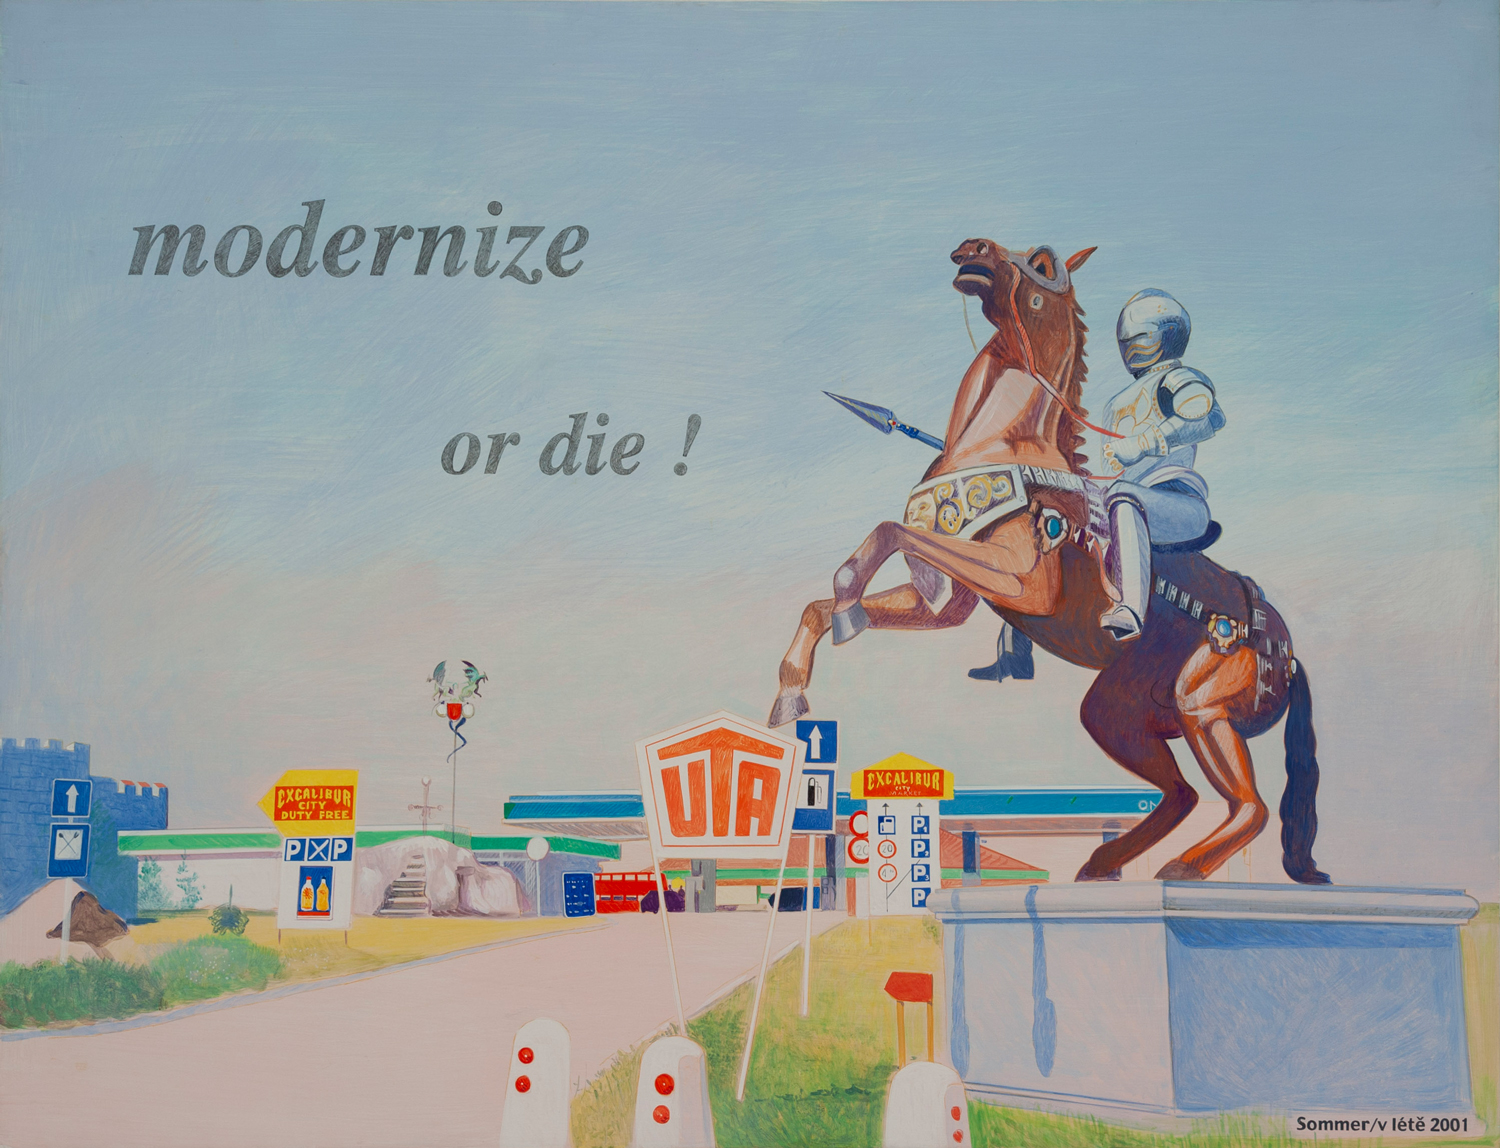 Im Vordergrund ist auf einem Sockel ein braunes Pferd mit einem in Rüstung gekleideter Person zu sehen, im Hintergrund eine Tankstelle. Auf dem Gemälde ist "modernize or die" zu lesen 